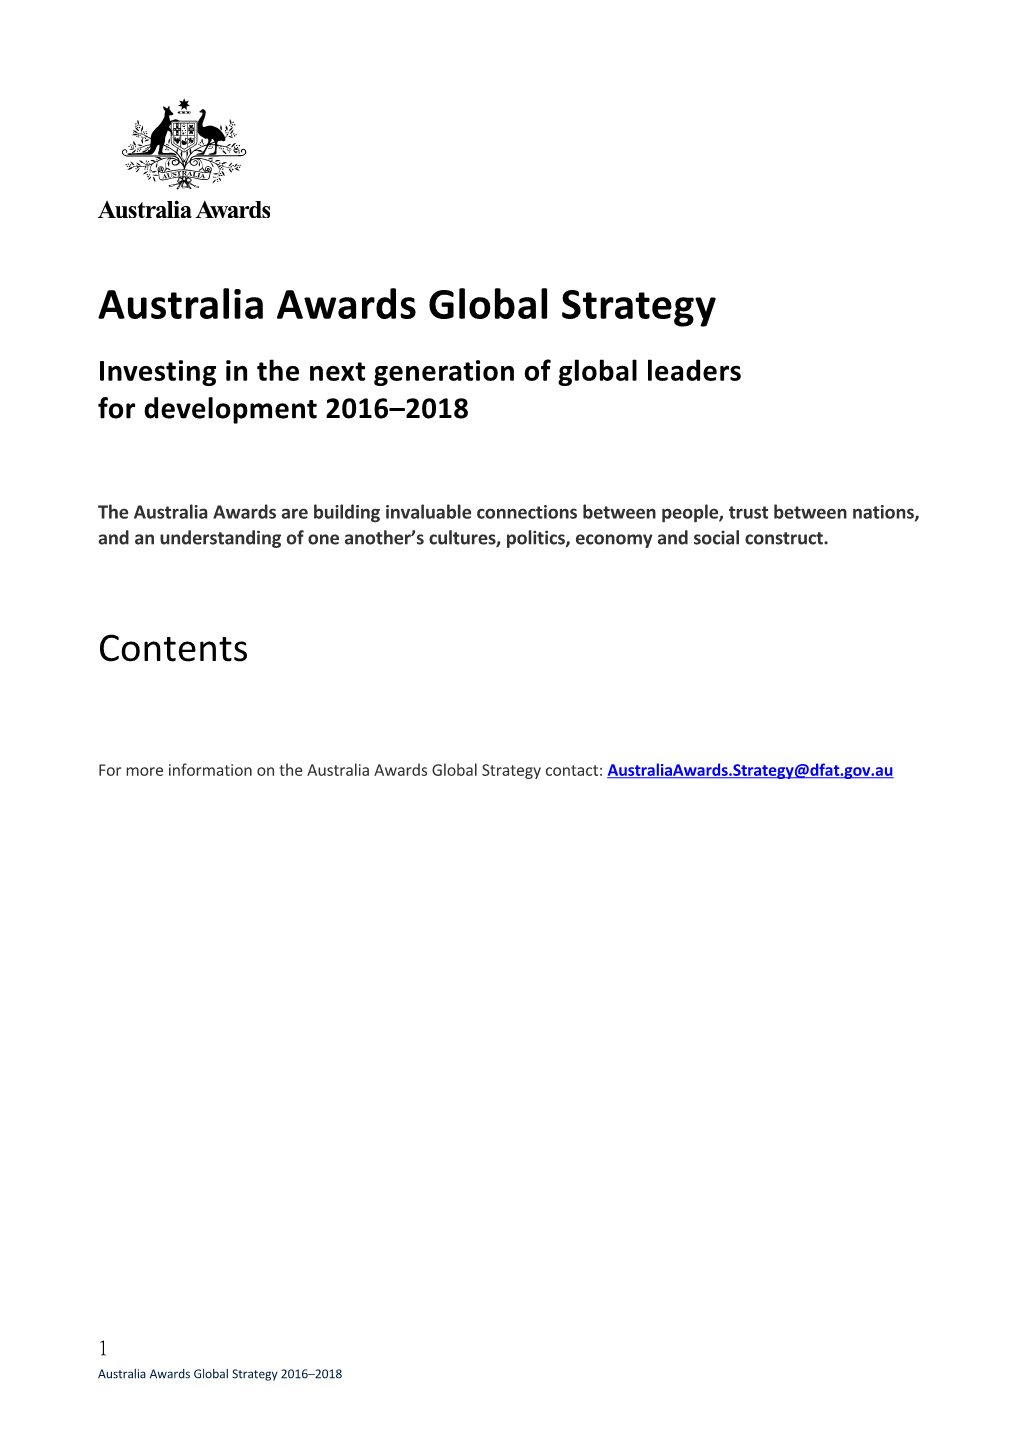 Australia Awards Global Strategy